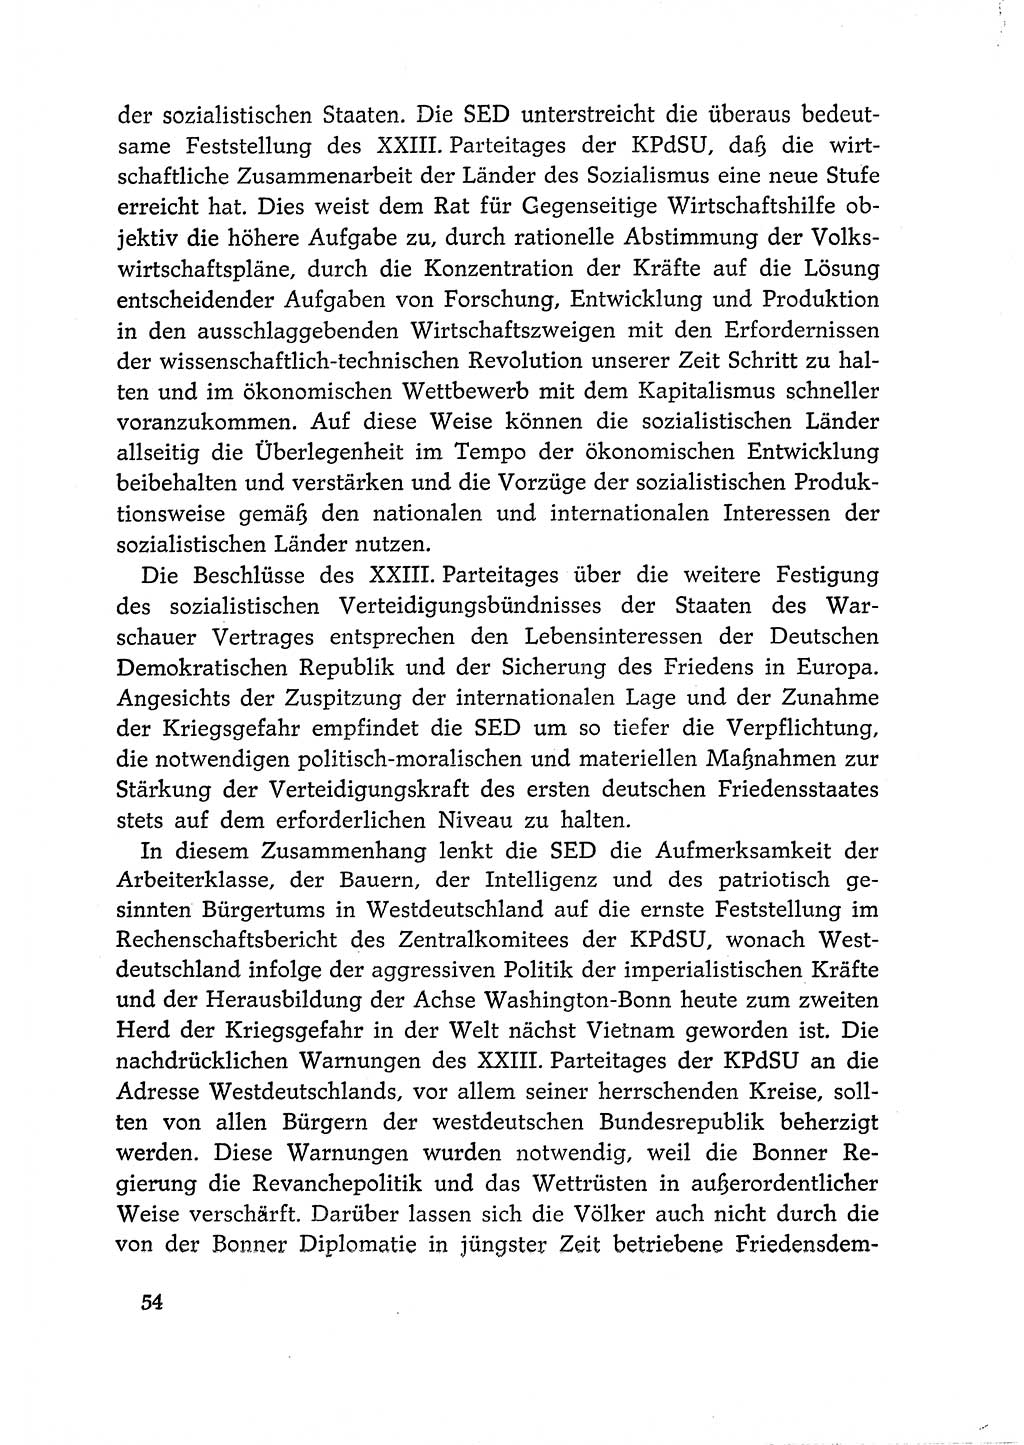 Dokumente der Sozialistischen Einheitspartei Deutschlands (SED) [Deutsche Demokratische Republik (DDR)] 1966-1967, Seite 54 (Dok. SED DDR 1966-1967, S. 54)